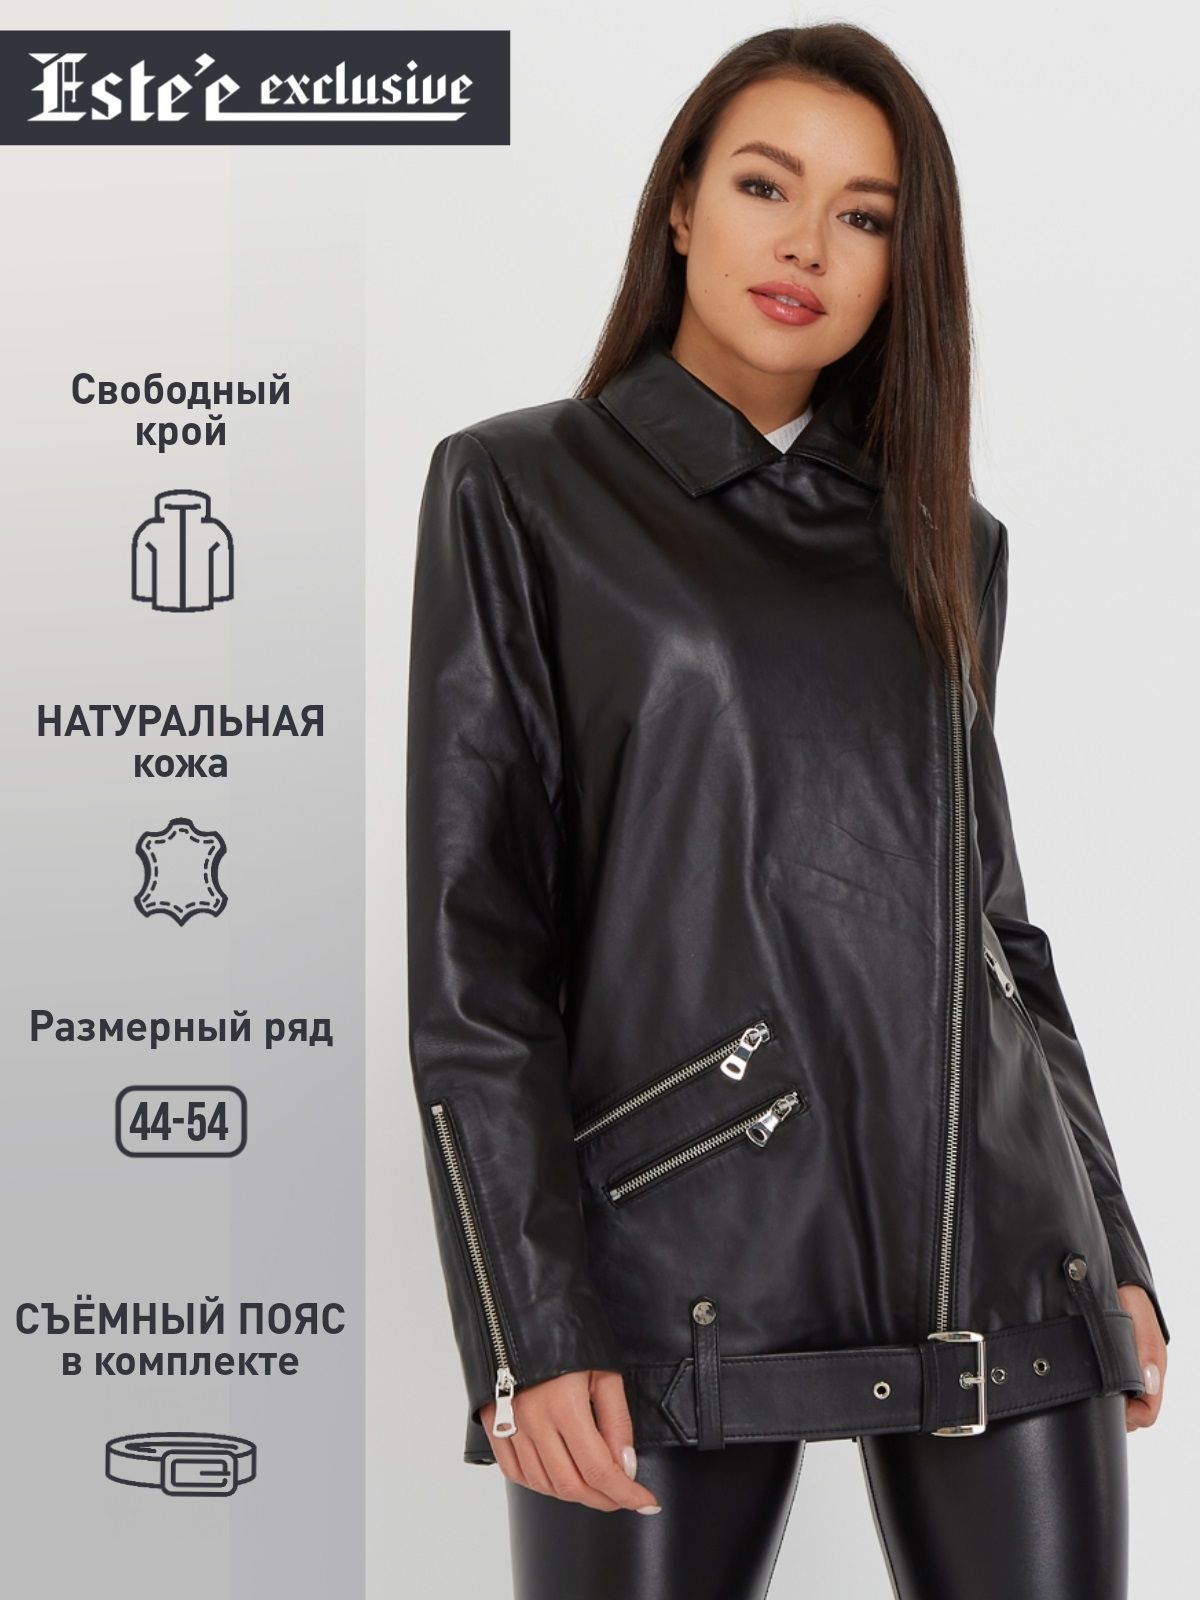 Кожаная куртка este'e Exclusive fur&Leather демисезонная, капюшон, черный